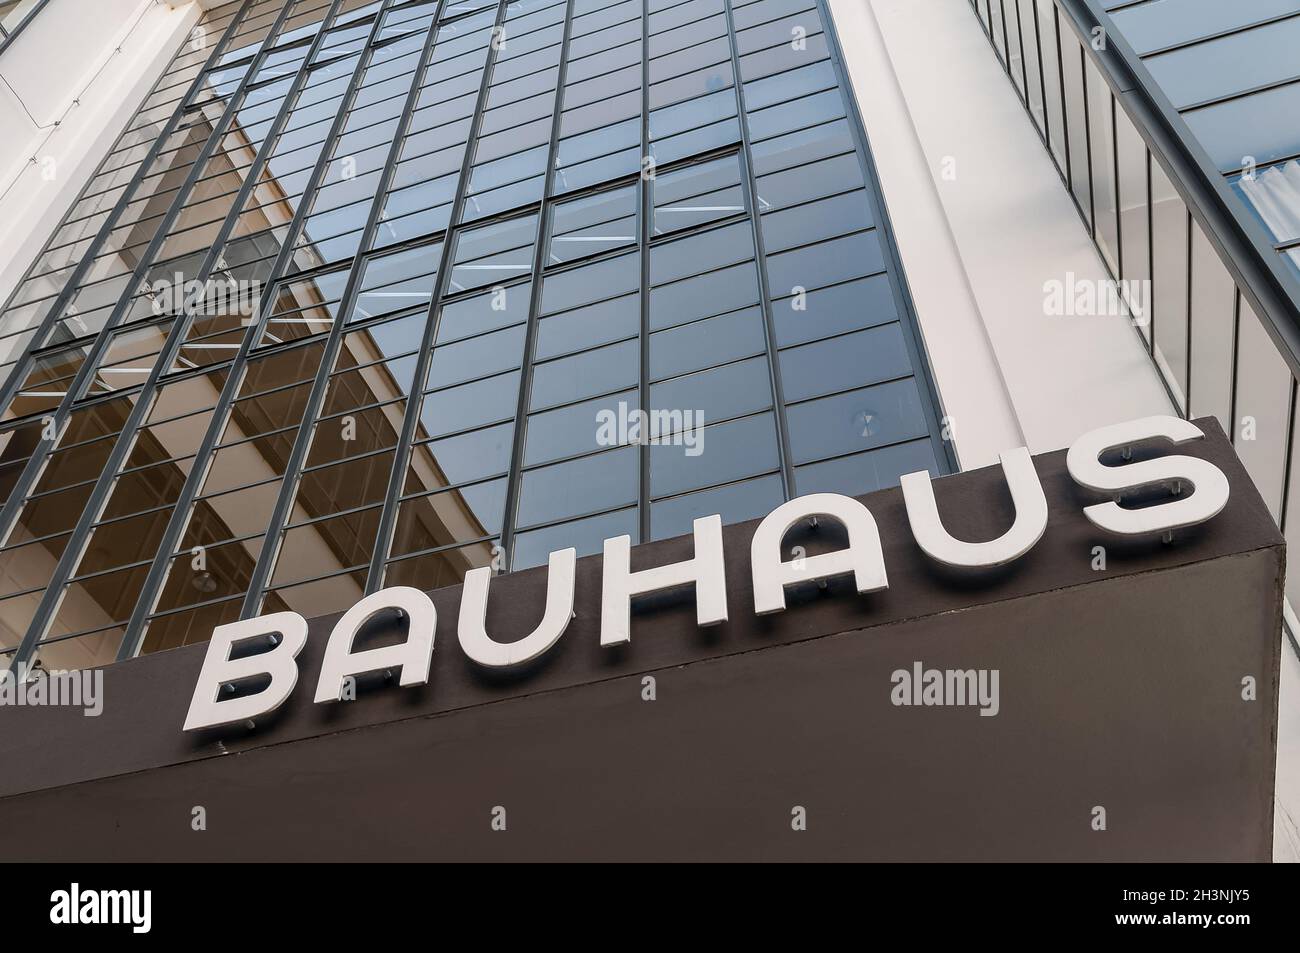 Bauhaus Dessau Schriftzug Bauhaus Stock Photo